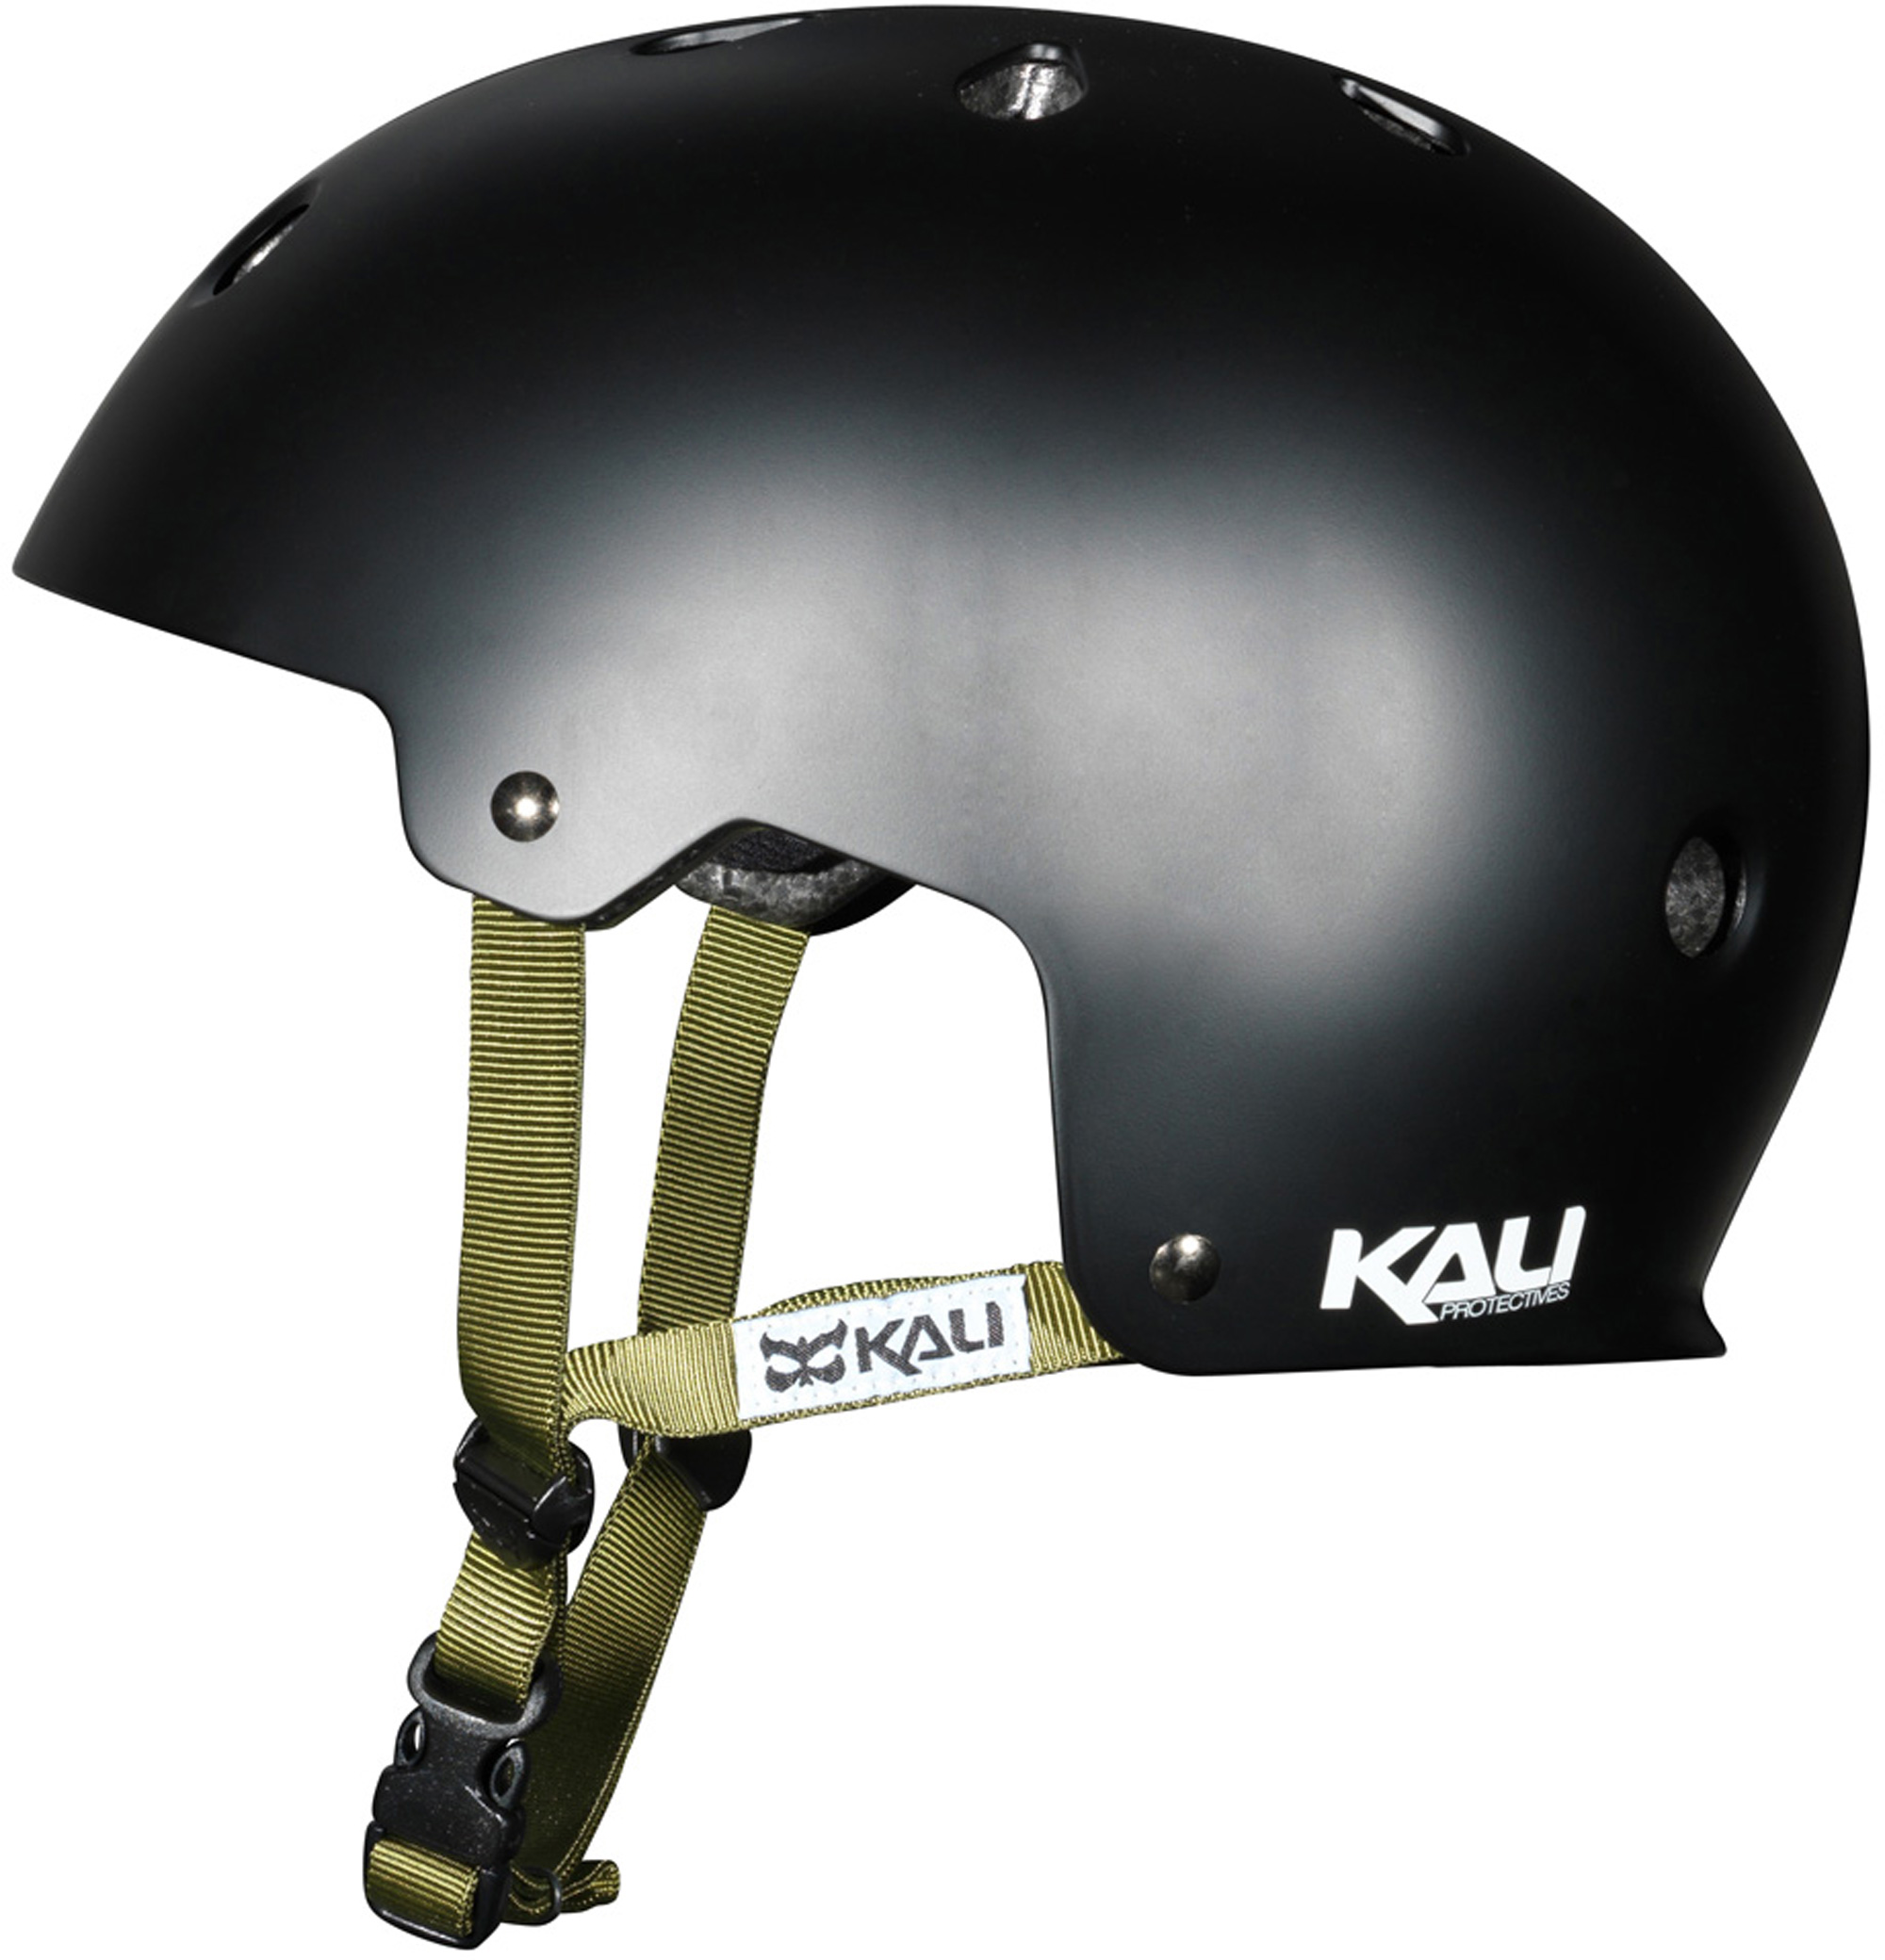 Kali Protectives Maha BMX Helmet